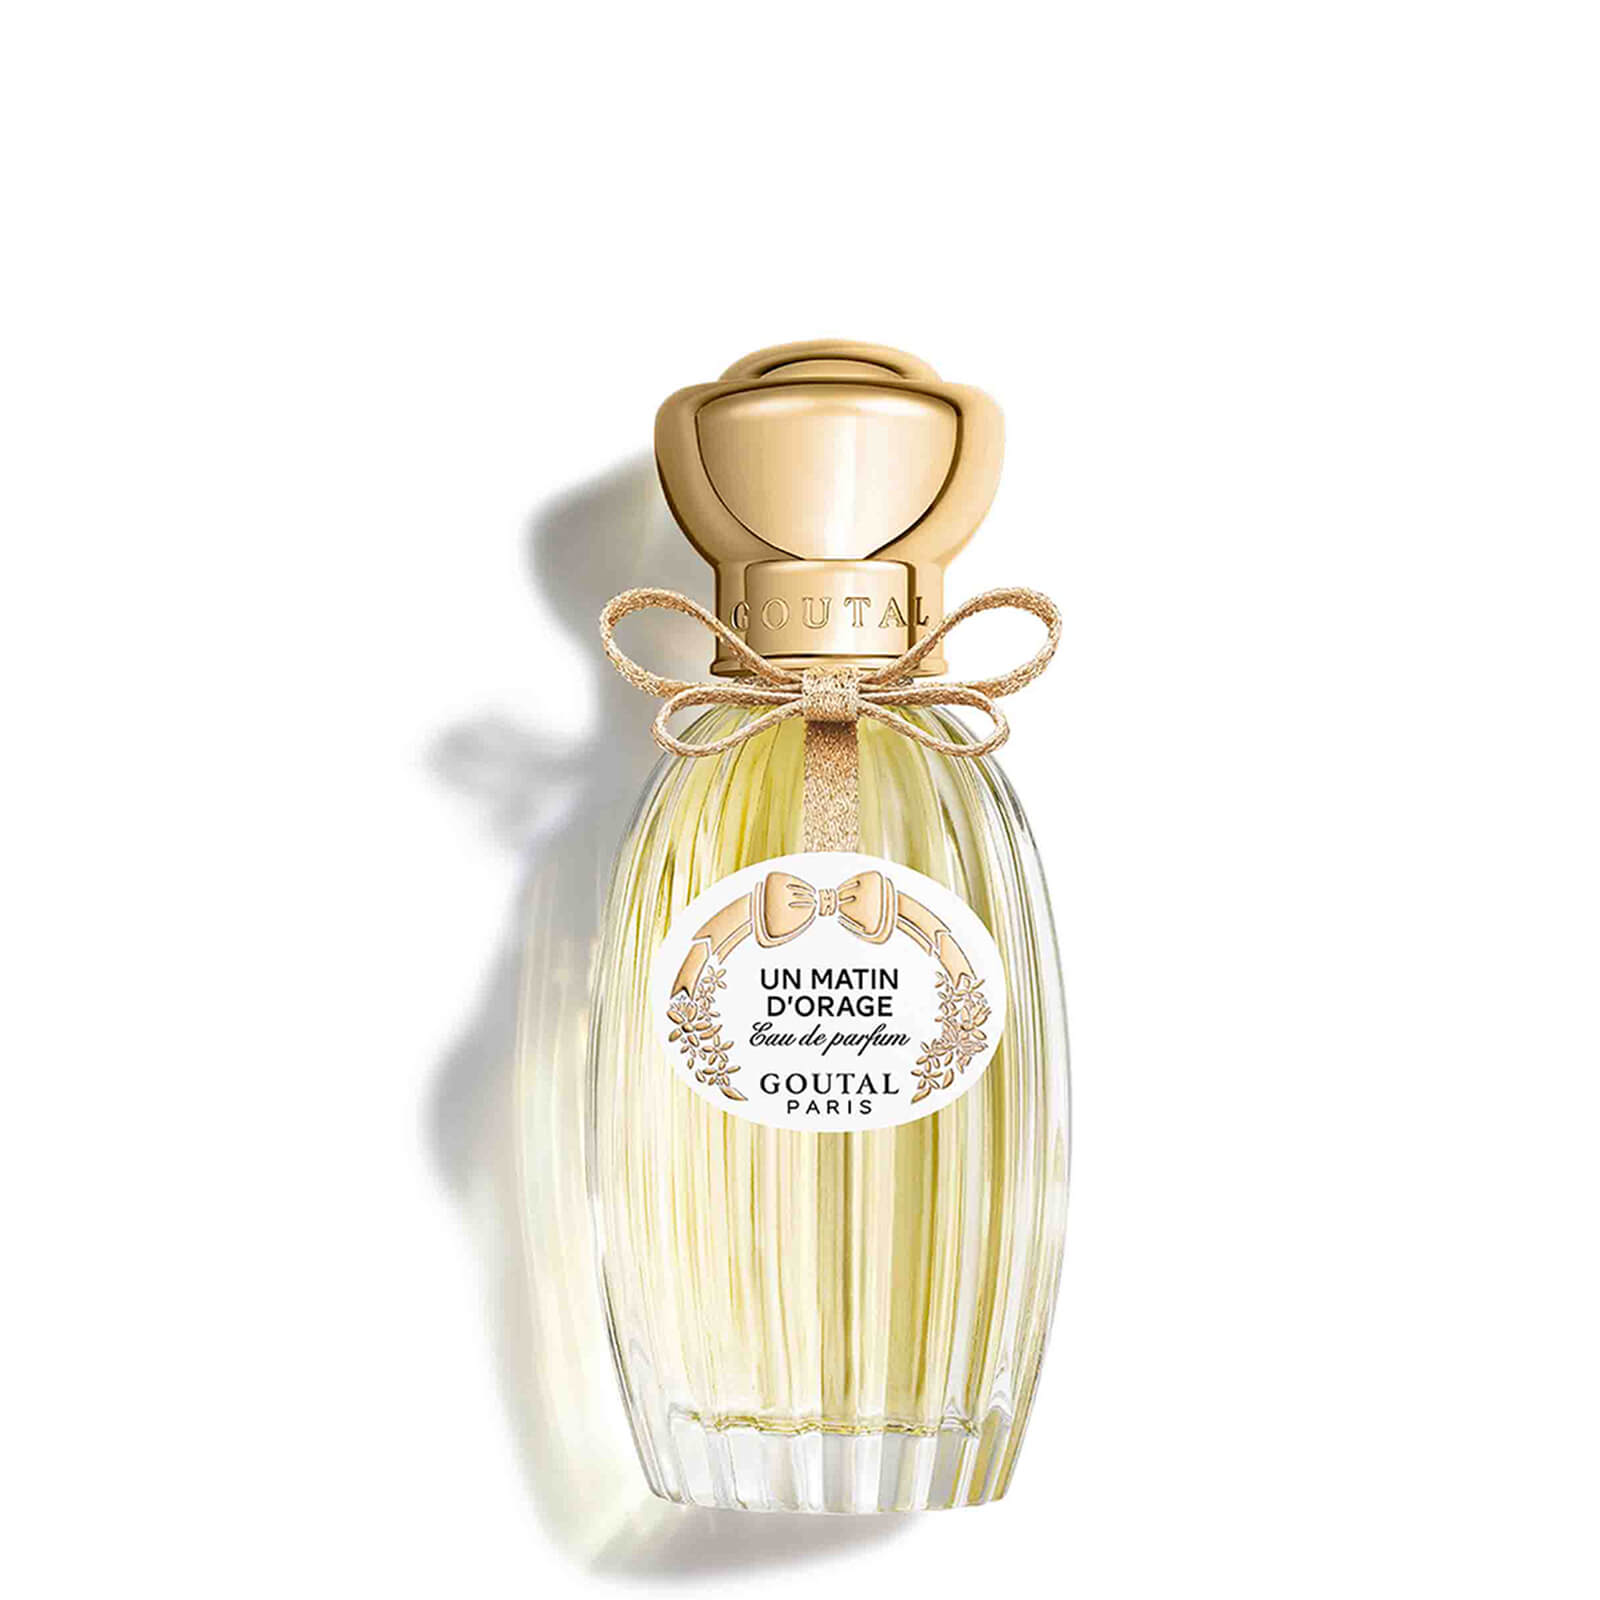 Photos - Women's Fragrance Goutal Paris Goutal Un Matin d'Orage Eau de Parfum 100ml G220110950N 